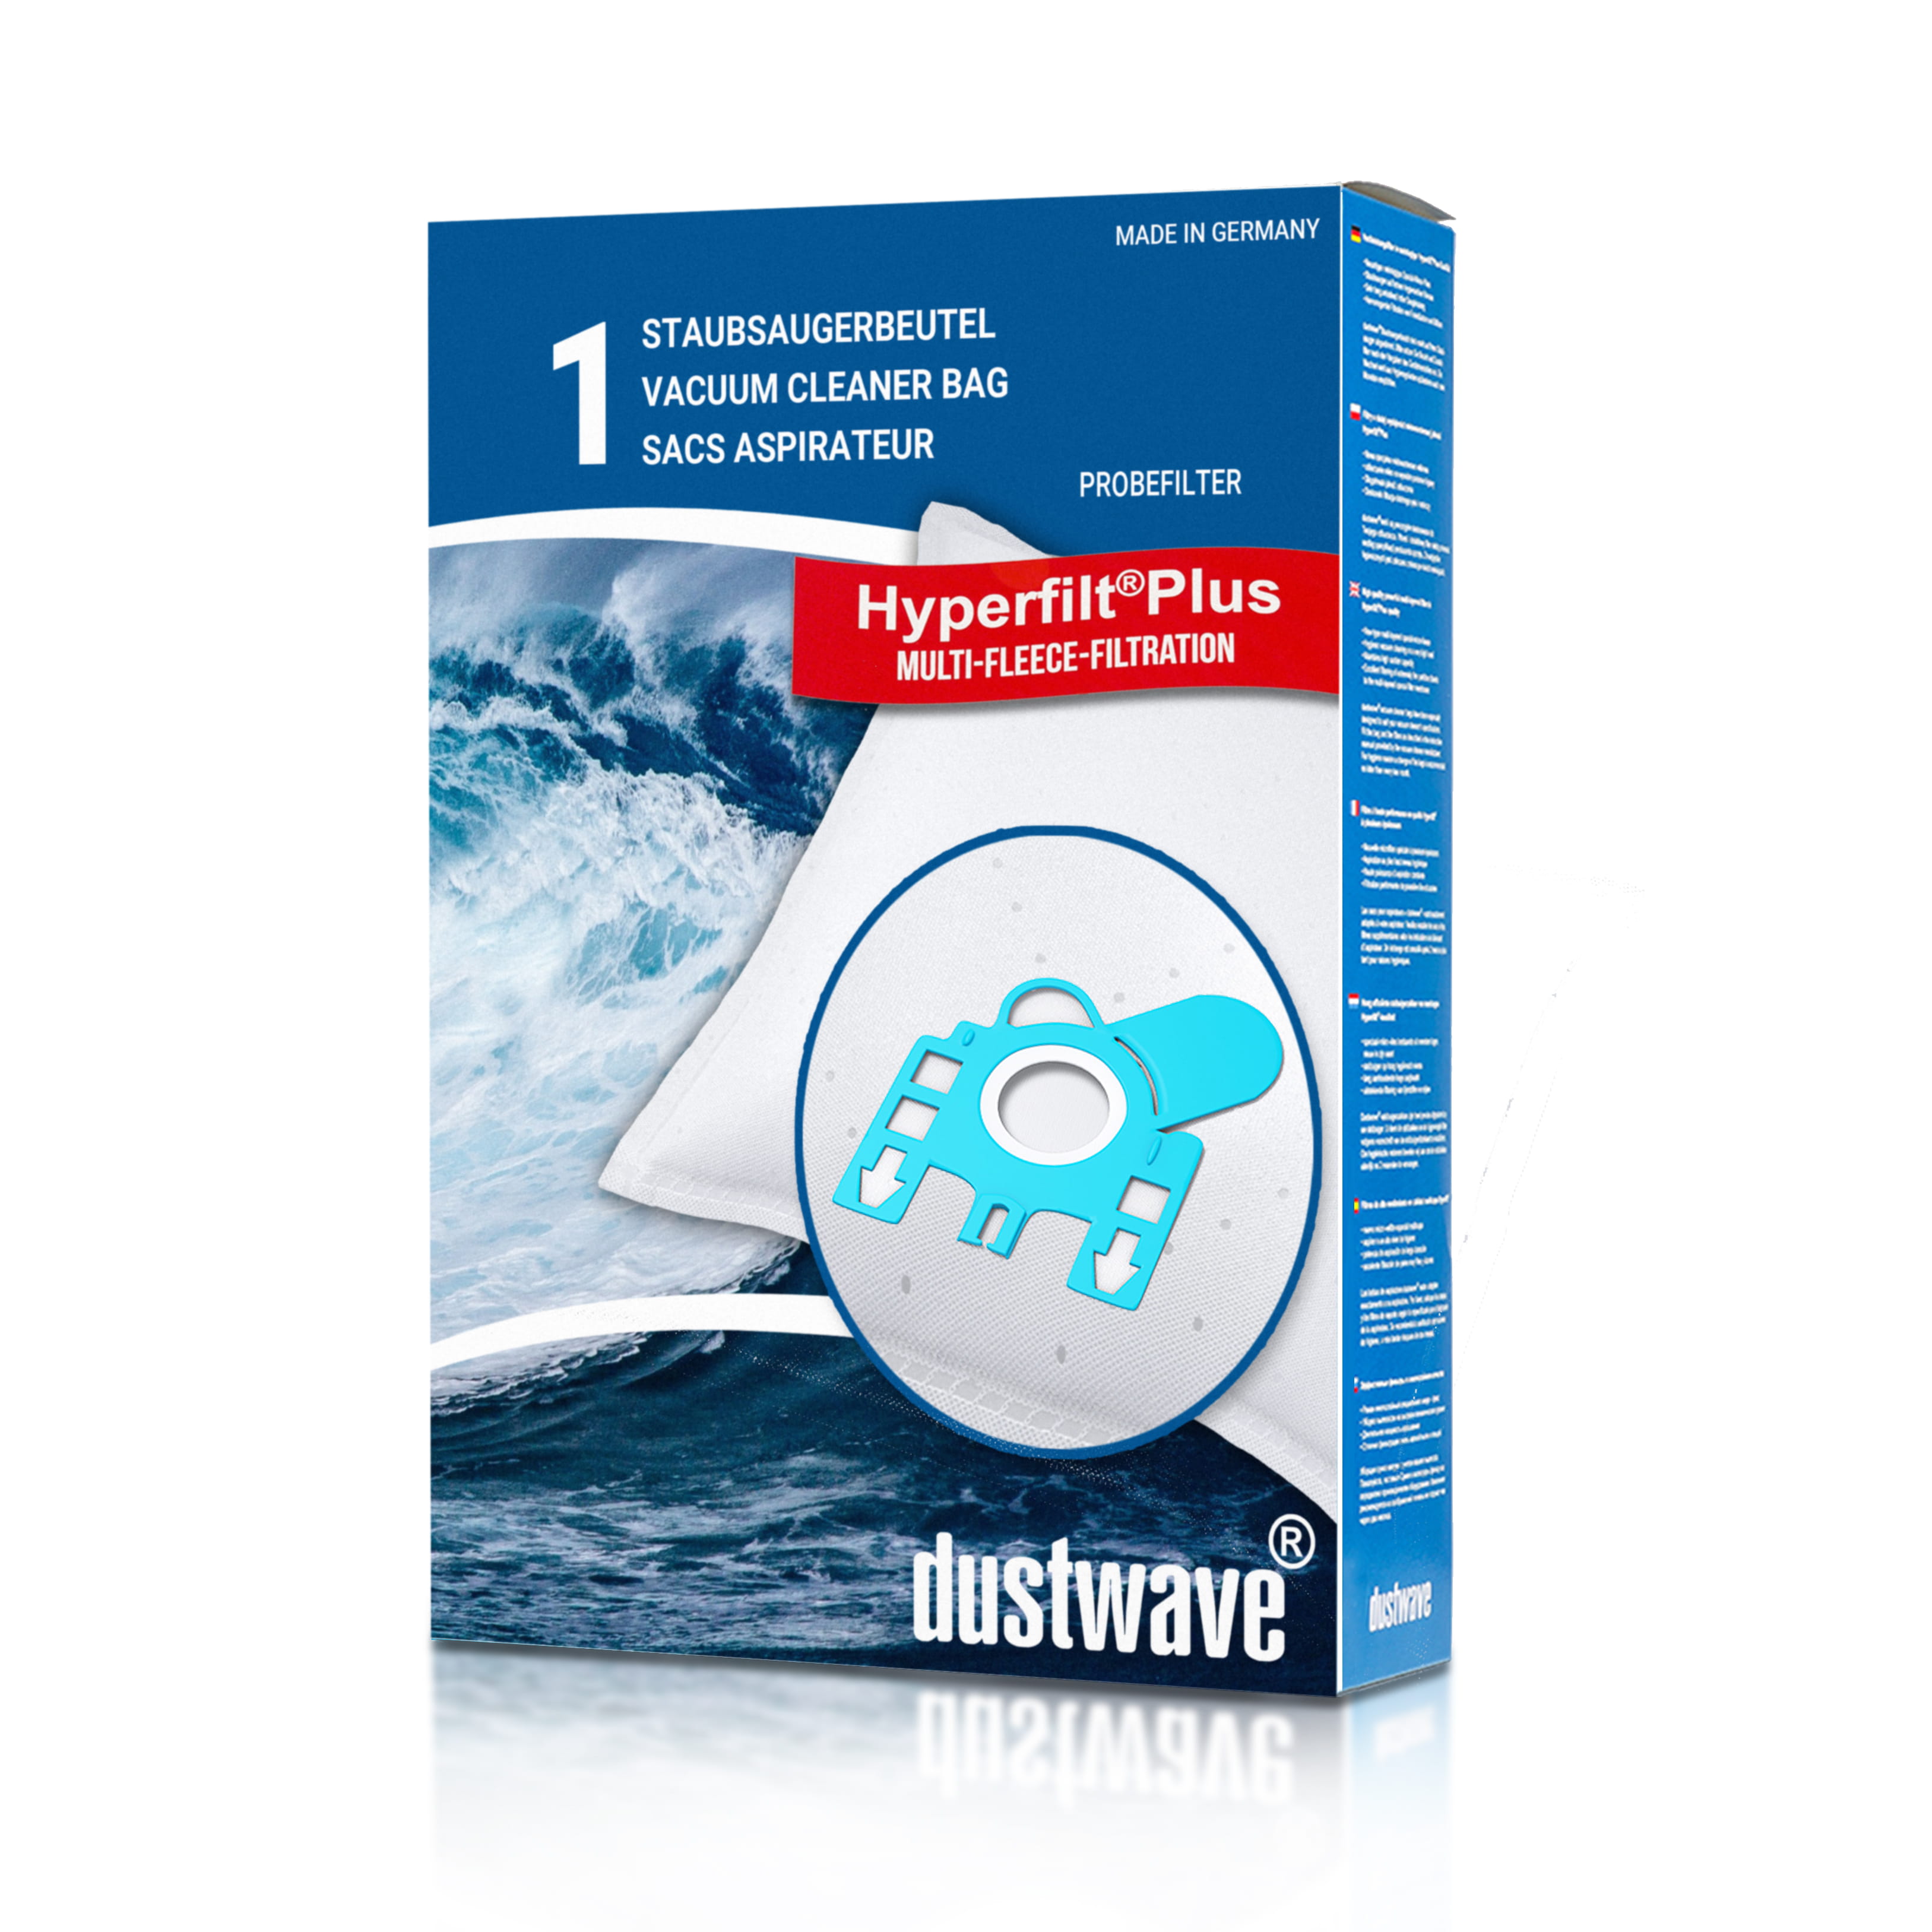 Dustwave® 1 Staubsaugerbeutel für Hoover Hypoallergenic 1500 - hocheffizient, mehrlagiges Mikrovlies mit Hygieneverschluss - Made in Germany